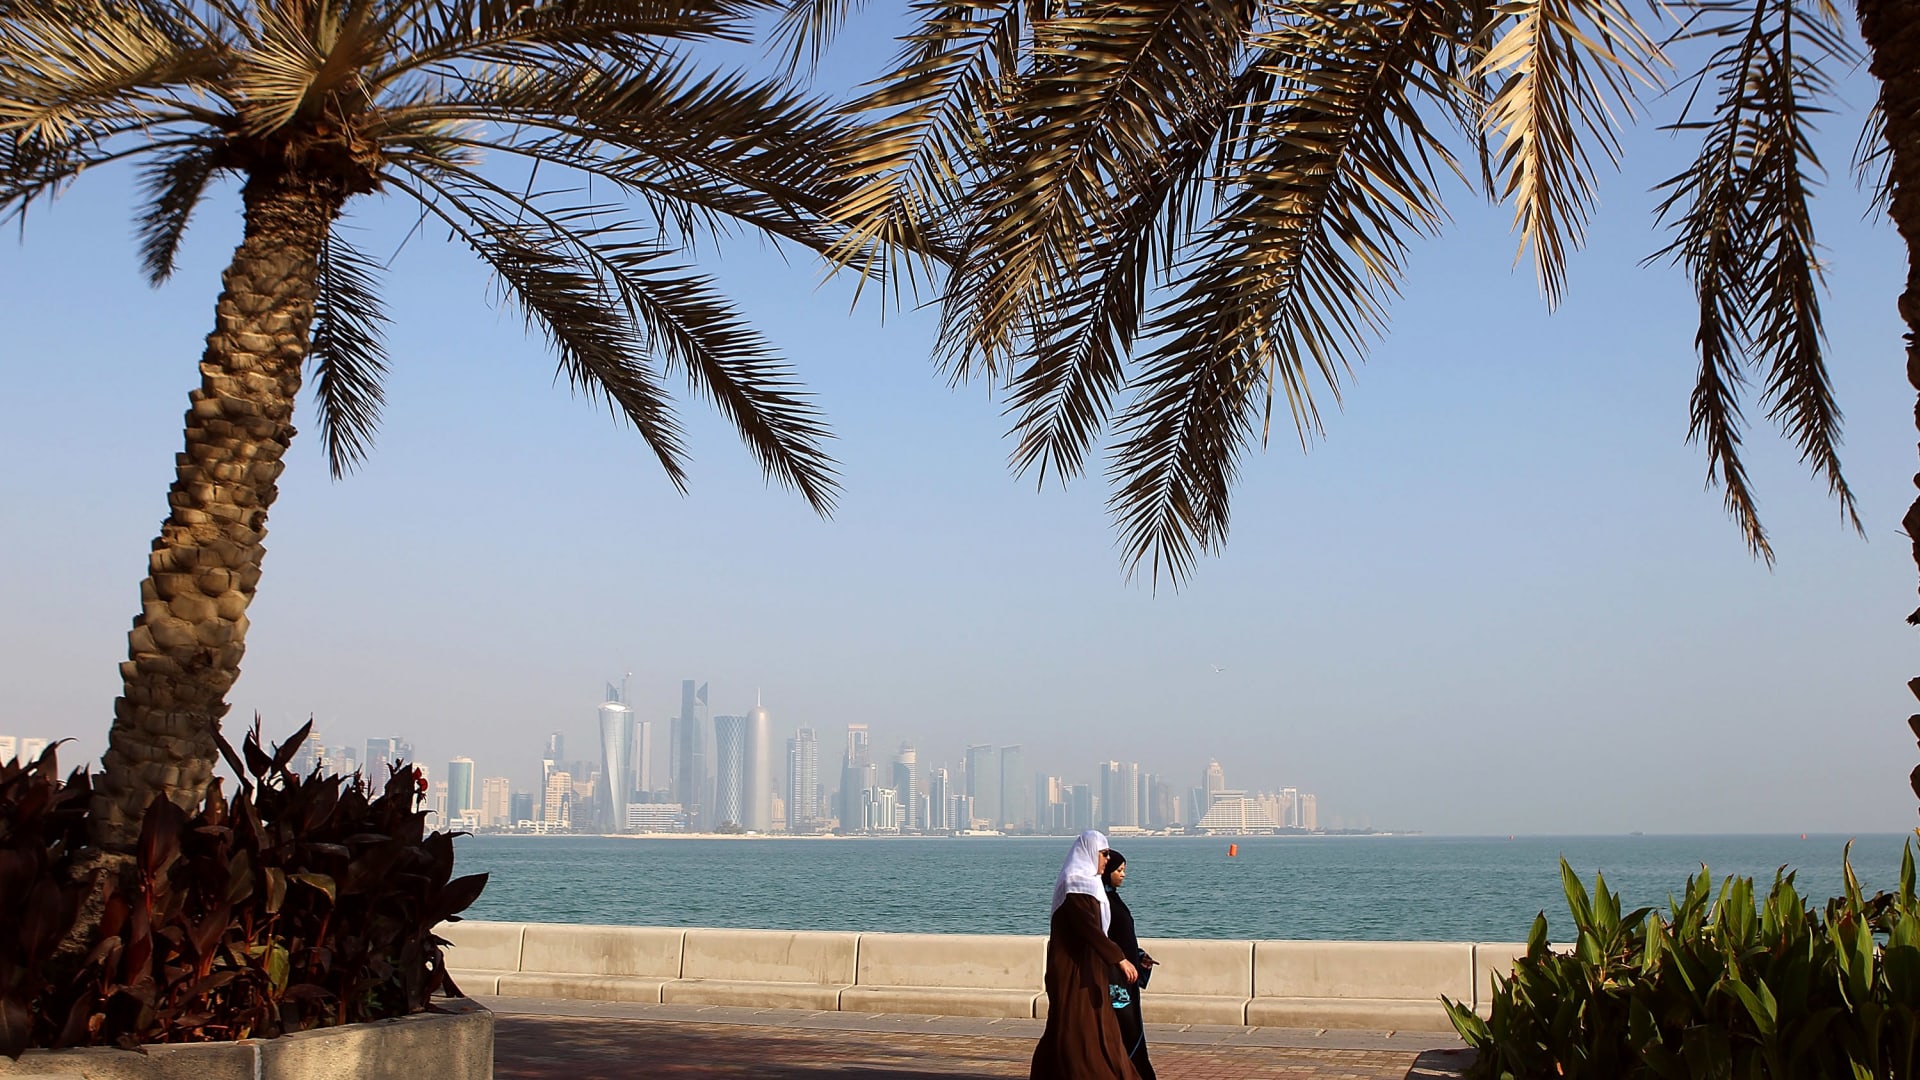 فيديوغرافيك.. تصنيف قطر العسكري يتراجع لتصبح الـ100 عالمياً